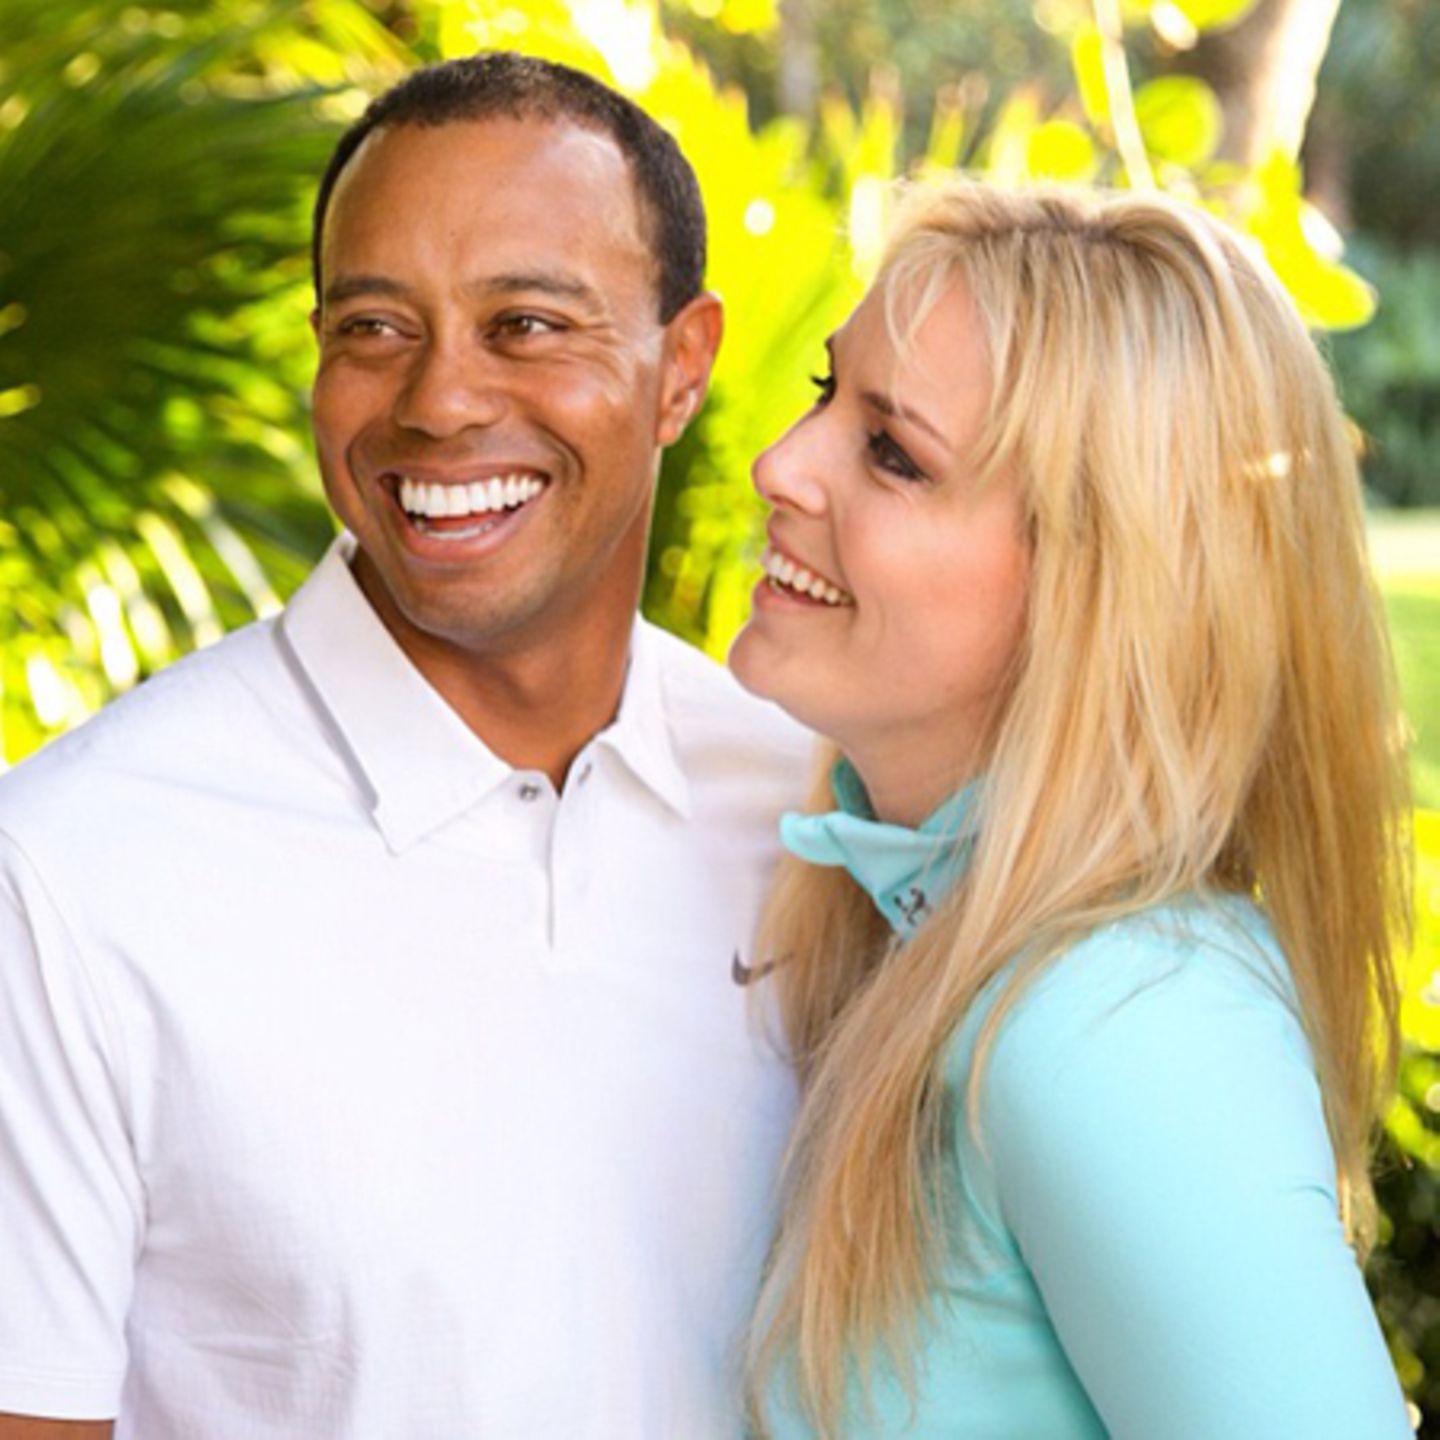 Tiger Woods und Lindsey Vonn